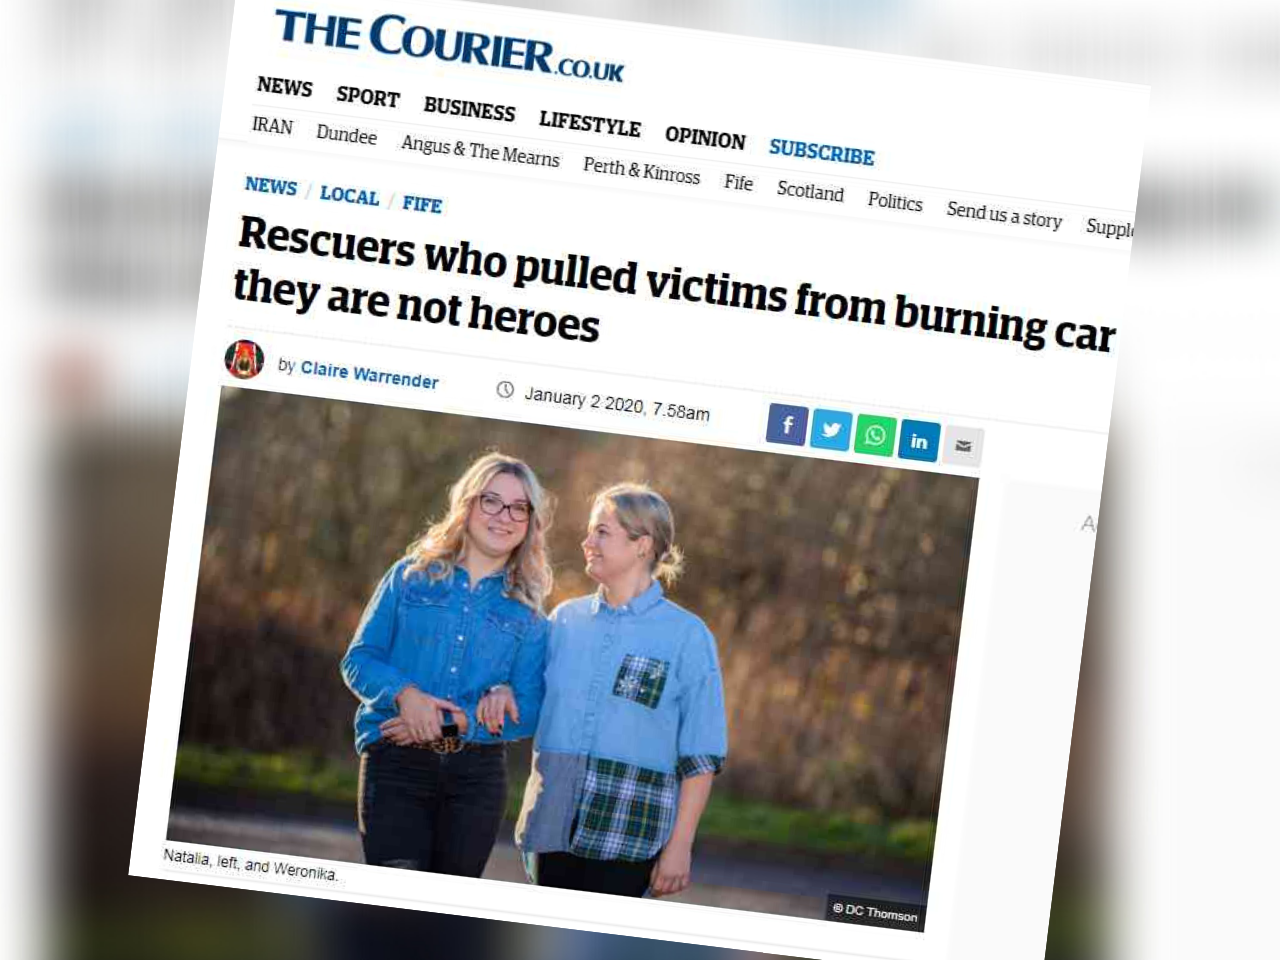 Dwie mamy uratowały 5 osób z płonącego samochodu. Są już bohaterkami